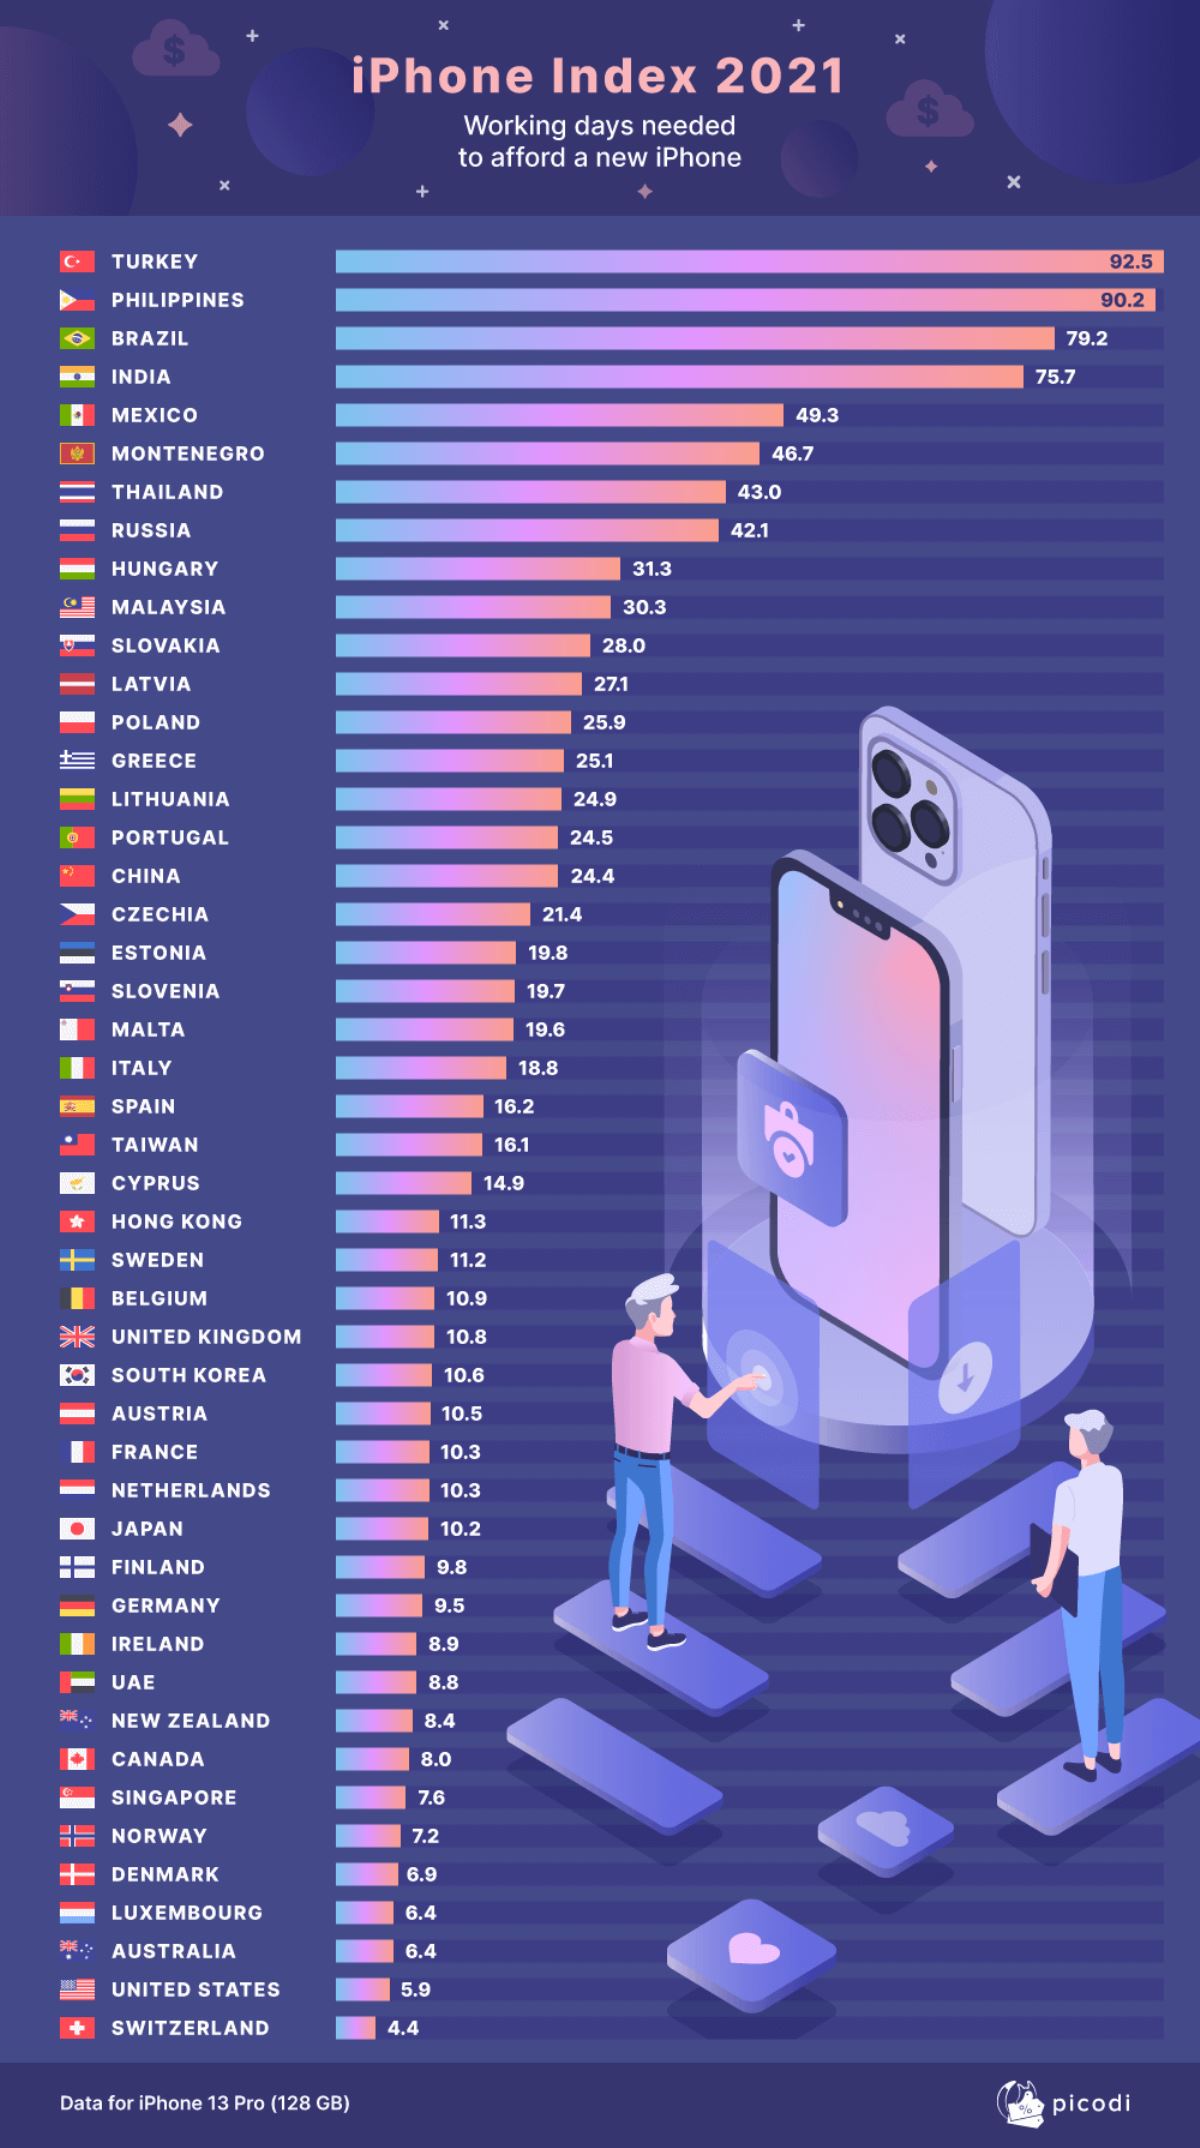 İphone almak için en çok çalışan ülke Türkiye